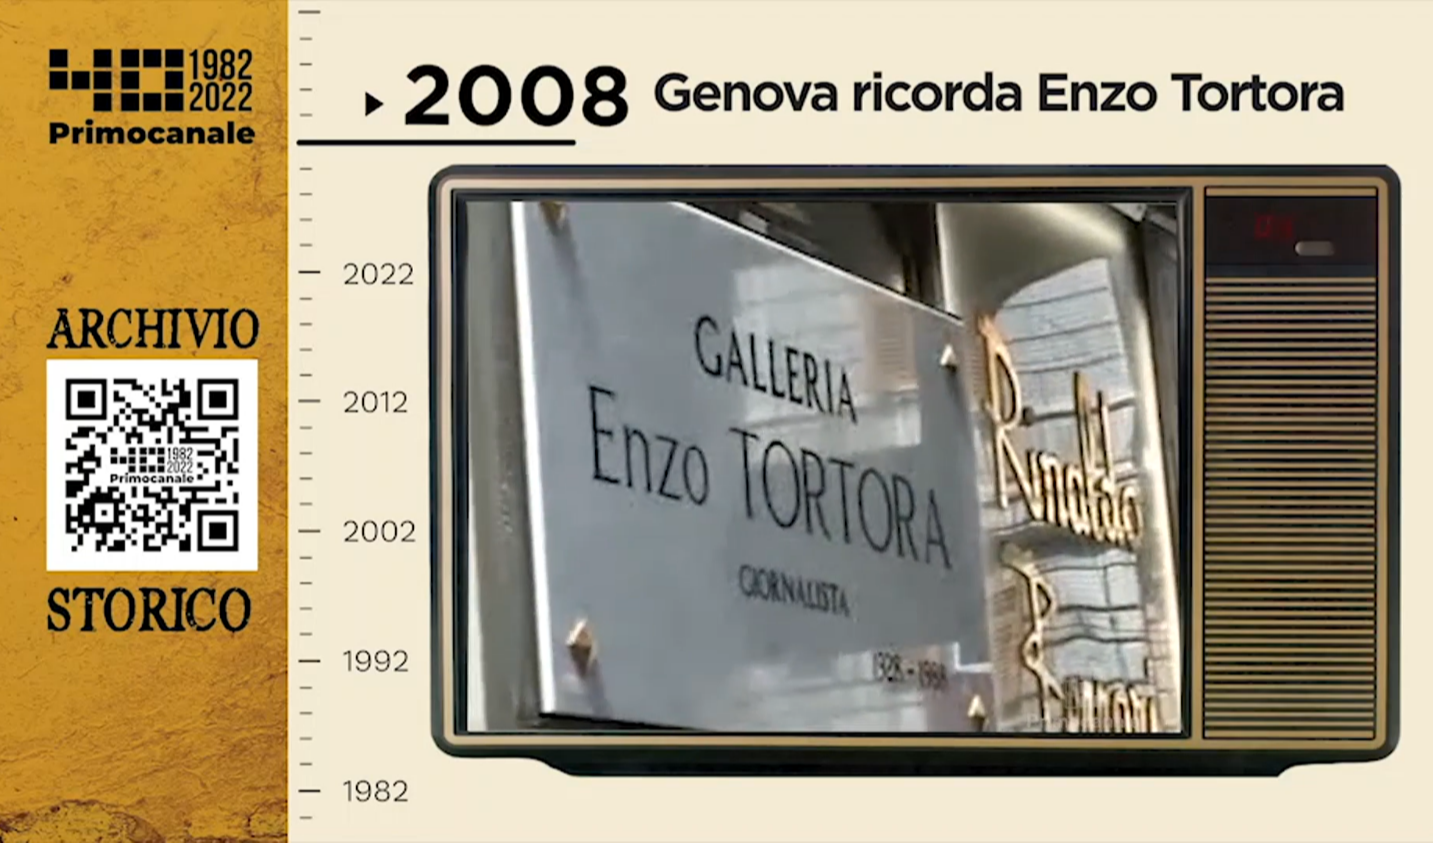 Dall'archivio storico di Primocanale, 2008: Genova ricorda Enzo Tortora 